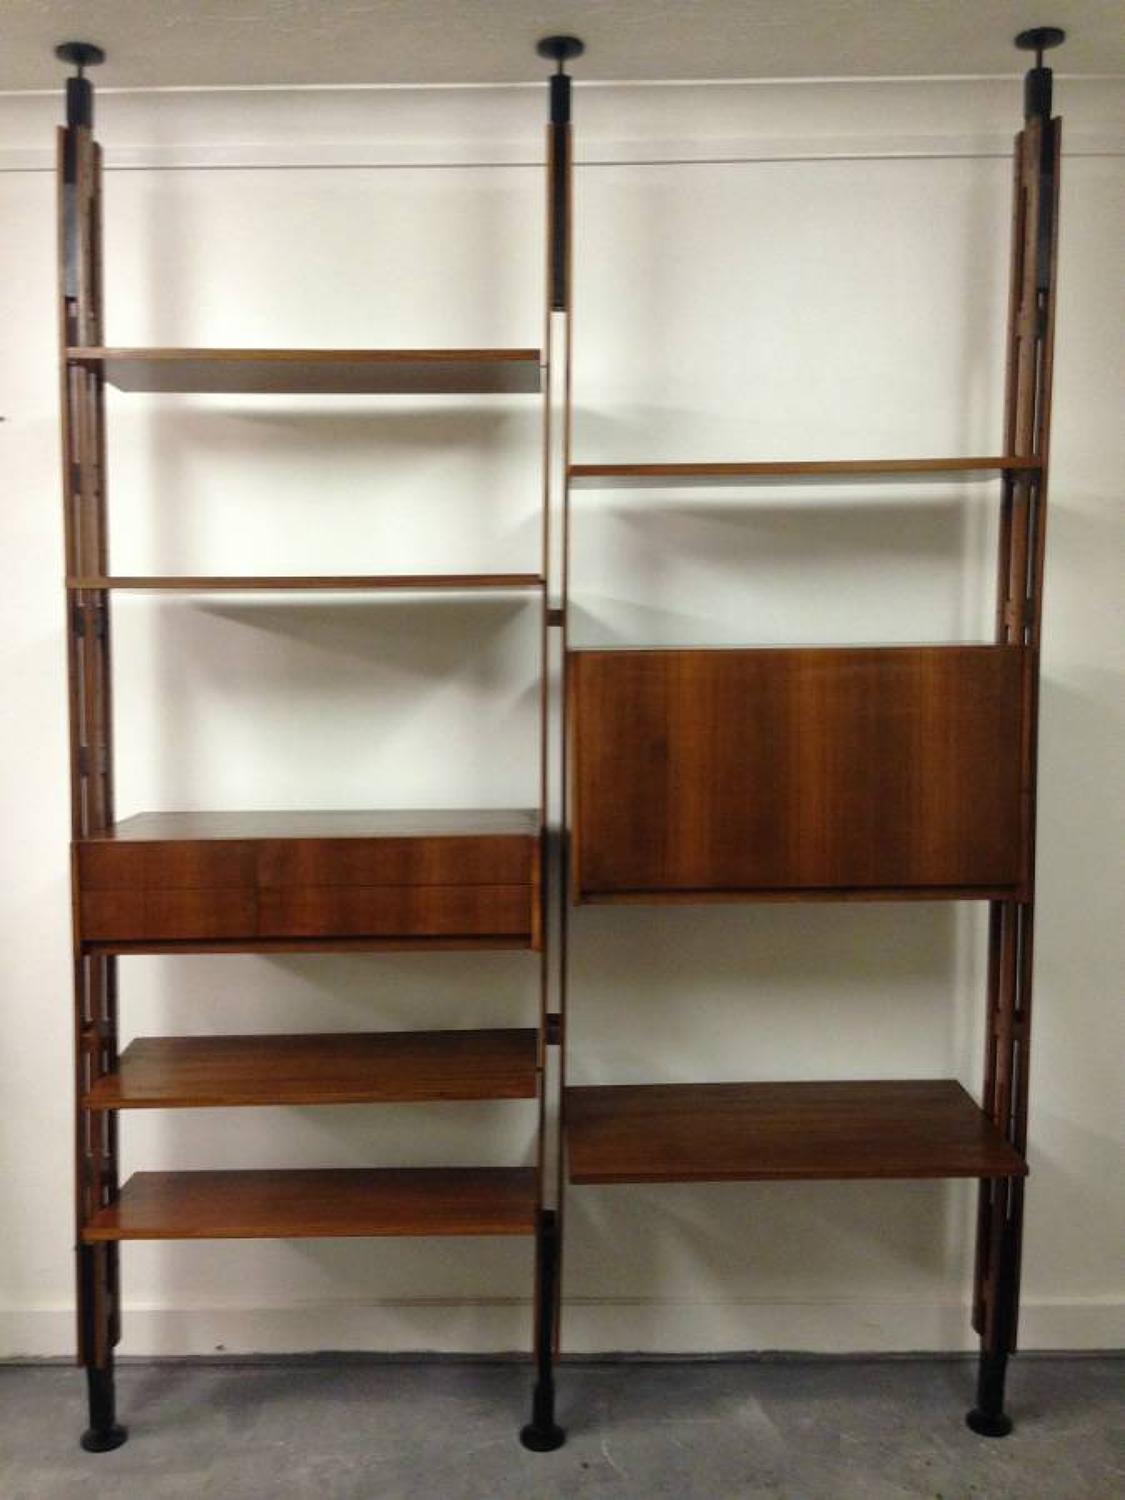 LB7 room divider bookcase by Franco Albini